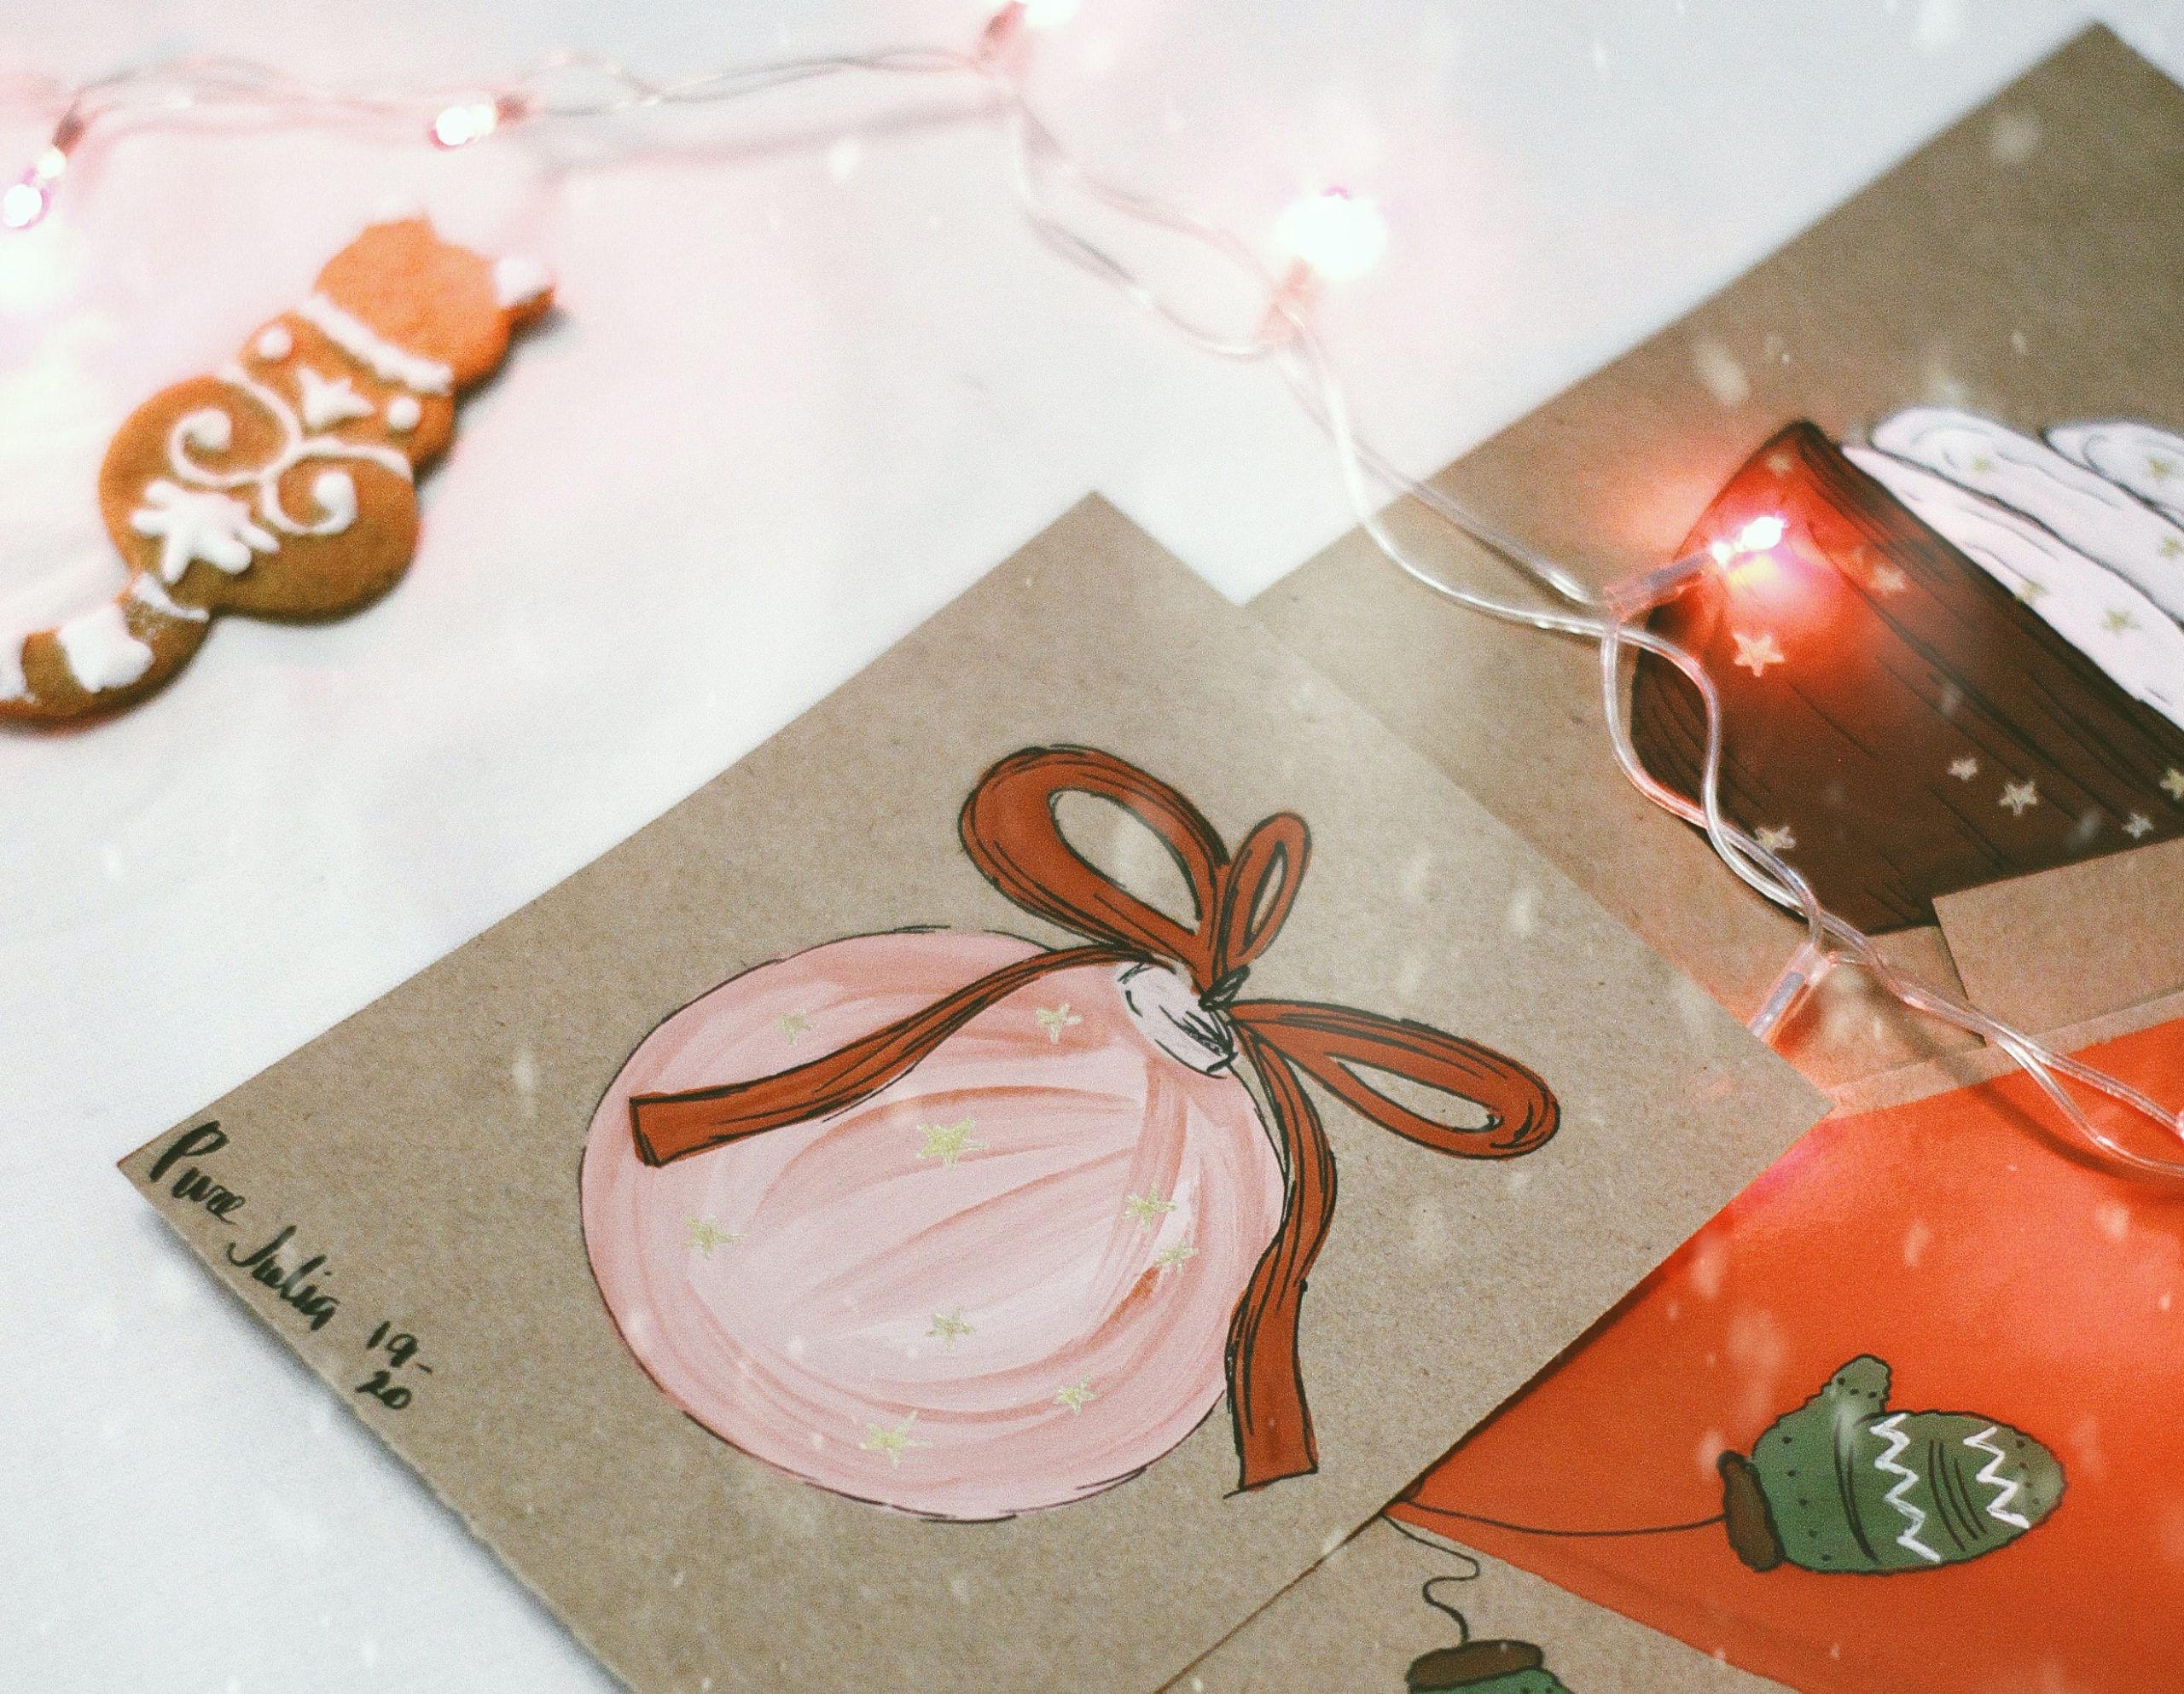 Last Minute Weihnachtskarten für Kund*innen: 5 Ideen für schnelle Weihnachtsgrüße